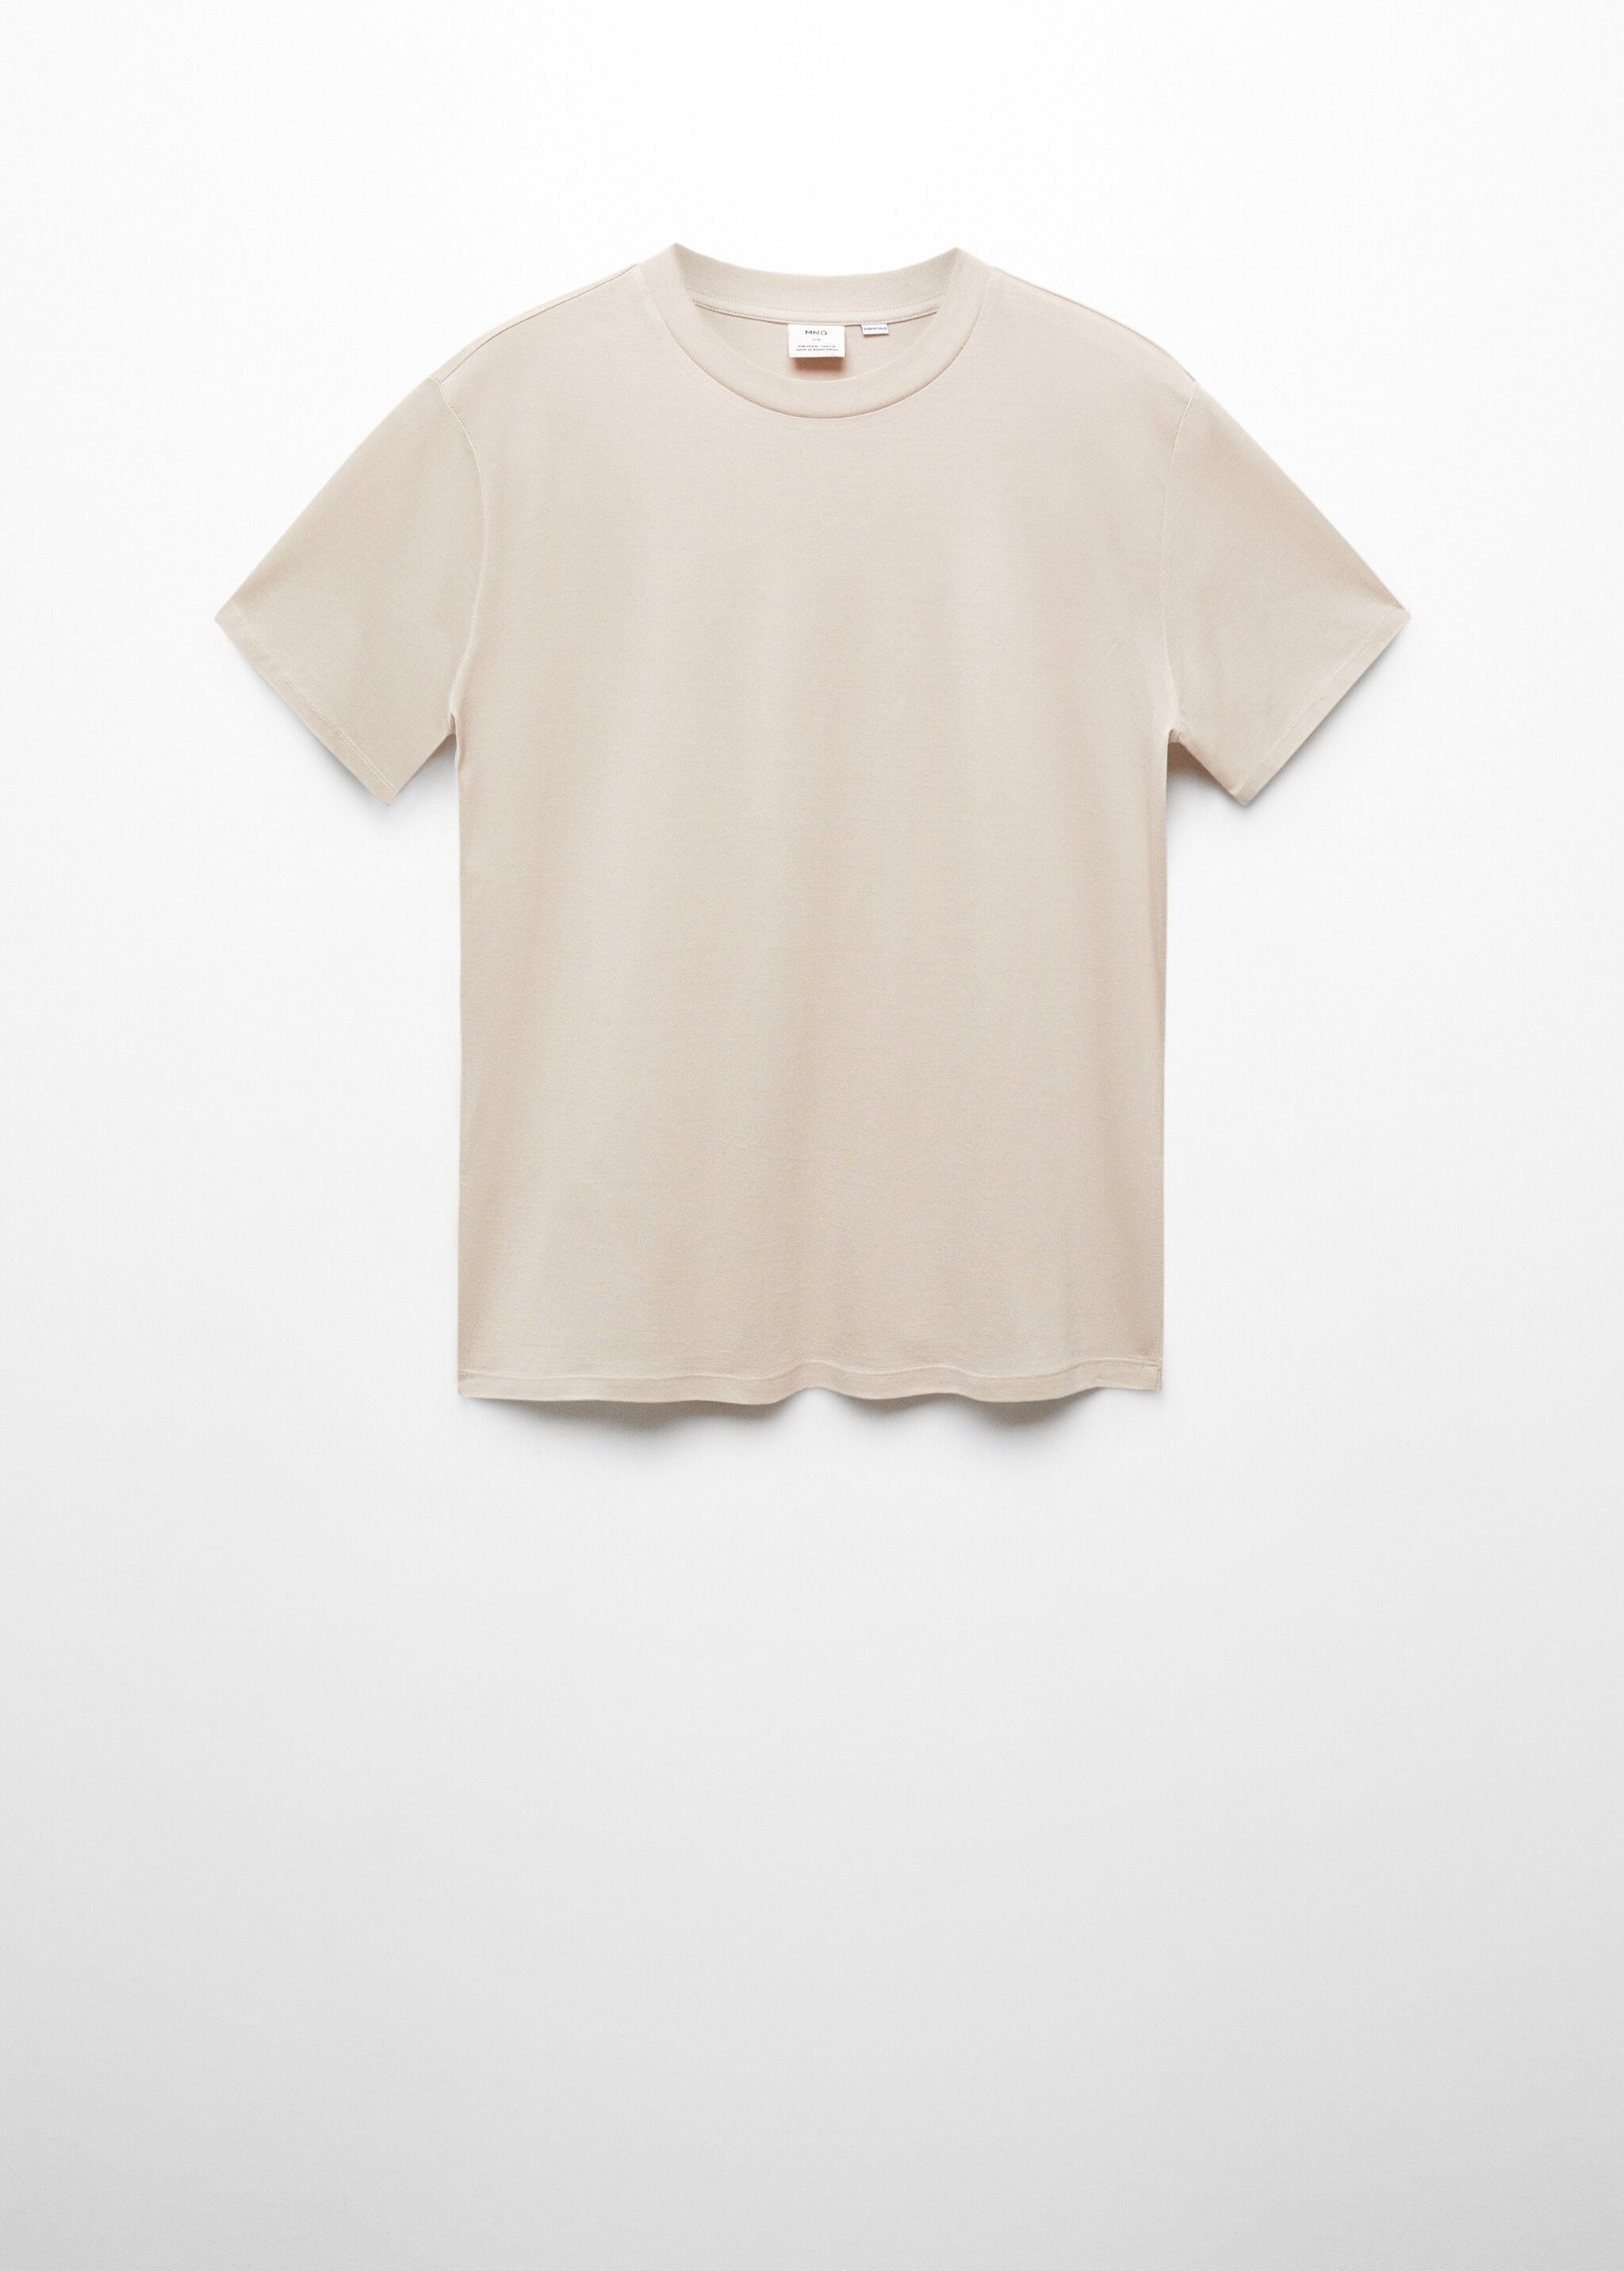 T-shirt slim fit mercerizada - Artigo sem modelo